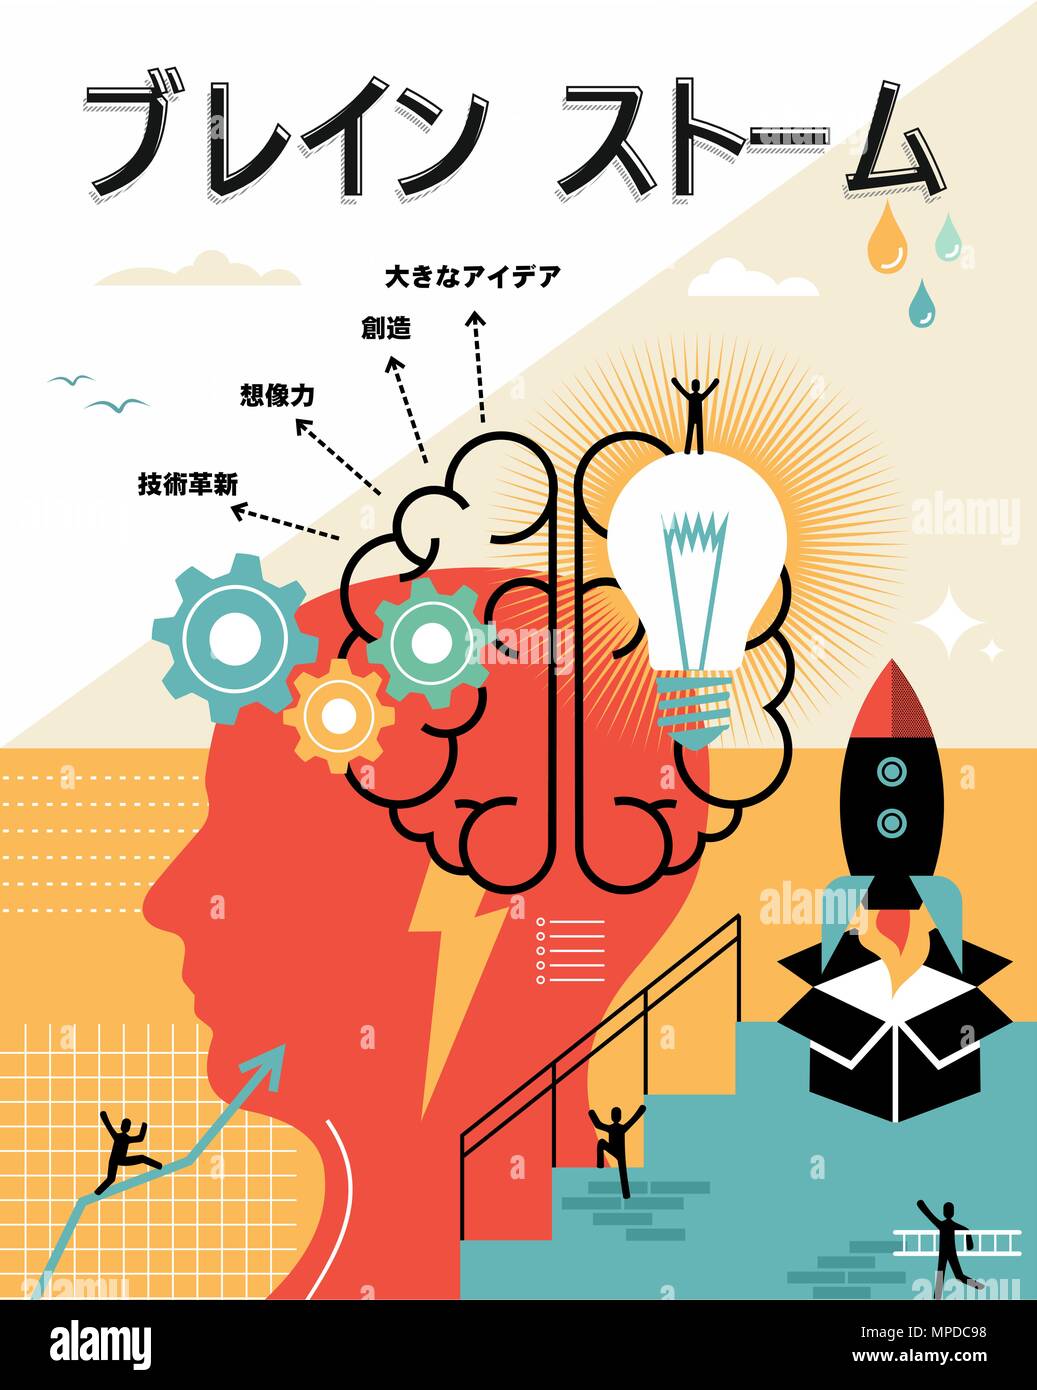 Brainstorming Abbildung in japanischer Sprache. Denken außerhalb der Box, kreative Geschäftsideen Konzept ideal für Poster und drucken. EPS 10 Vektor. Stock Vektor